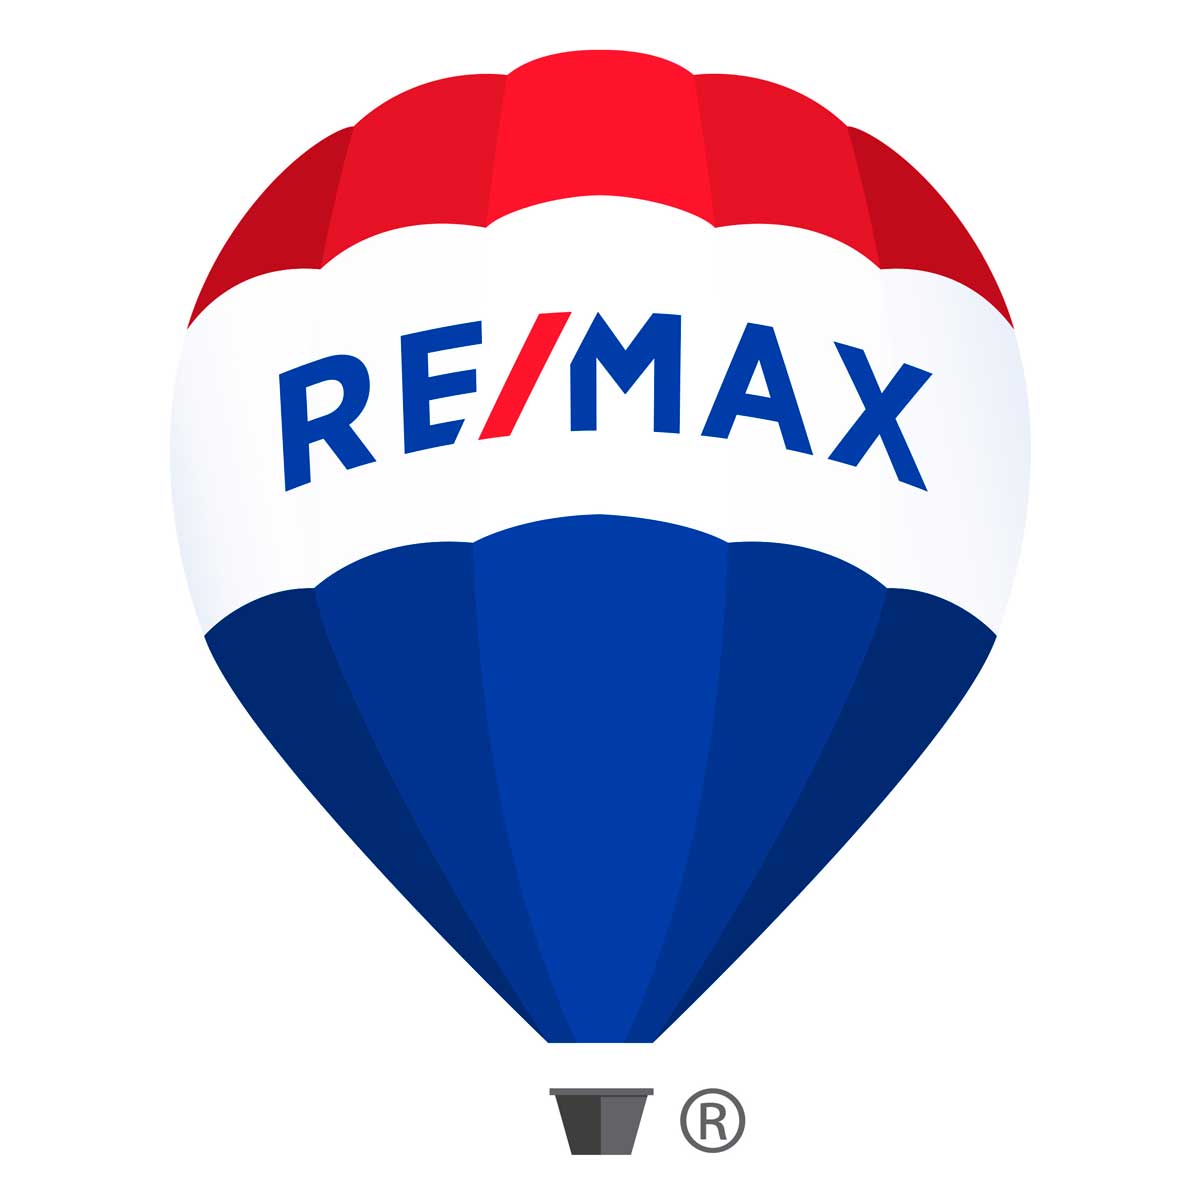 (c) Remax.com.ar